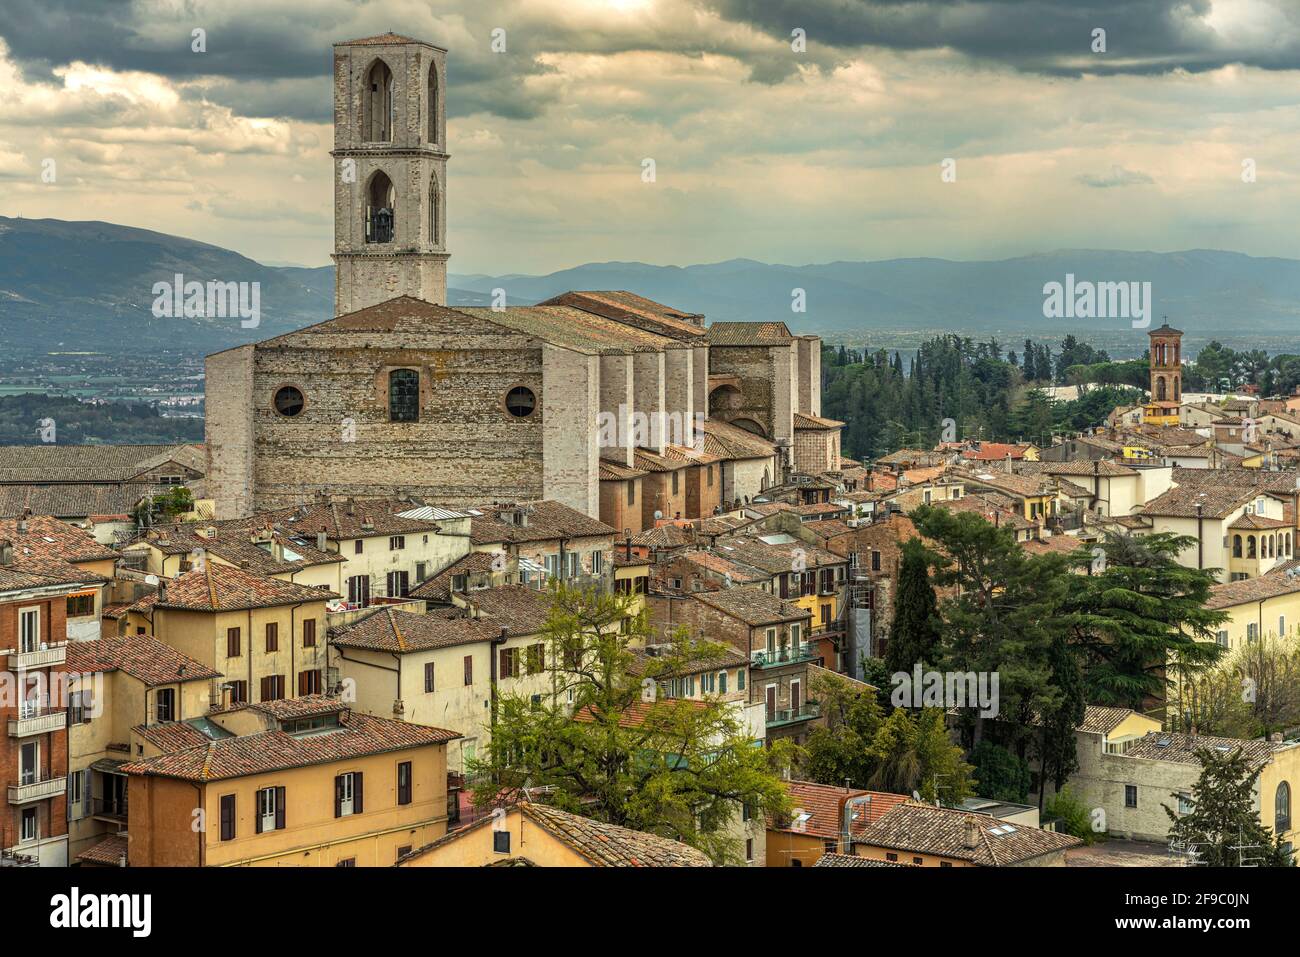 Paesaggio urbano della città di Perugia. Imponente il convento di San Domenico con il suo campanile romanico. Perugia, Umbria, Italia, Europa Foto Stock